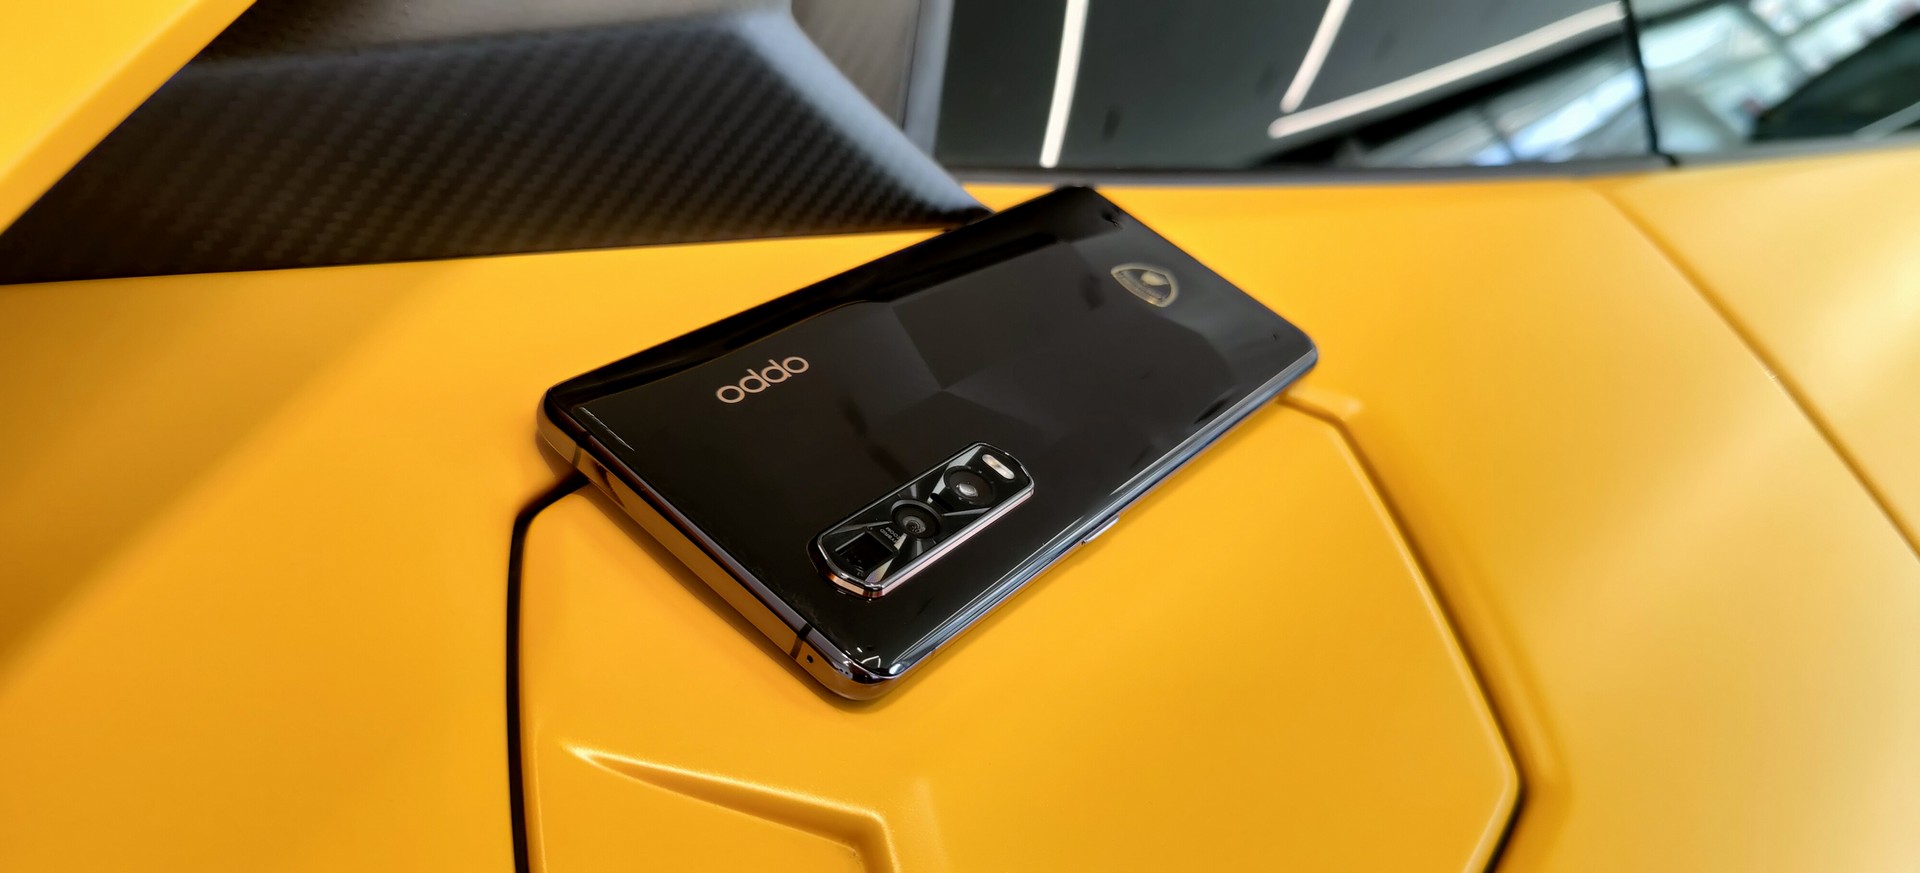 OPPO Find X2 Pro Automobili Lamborghini Edition